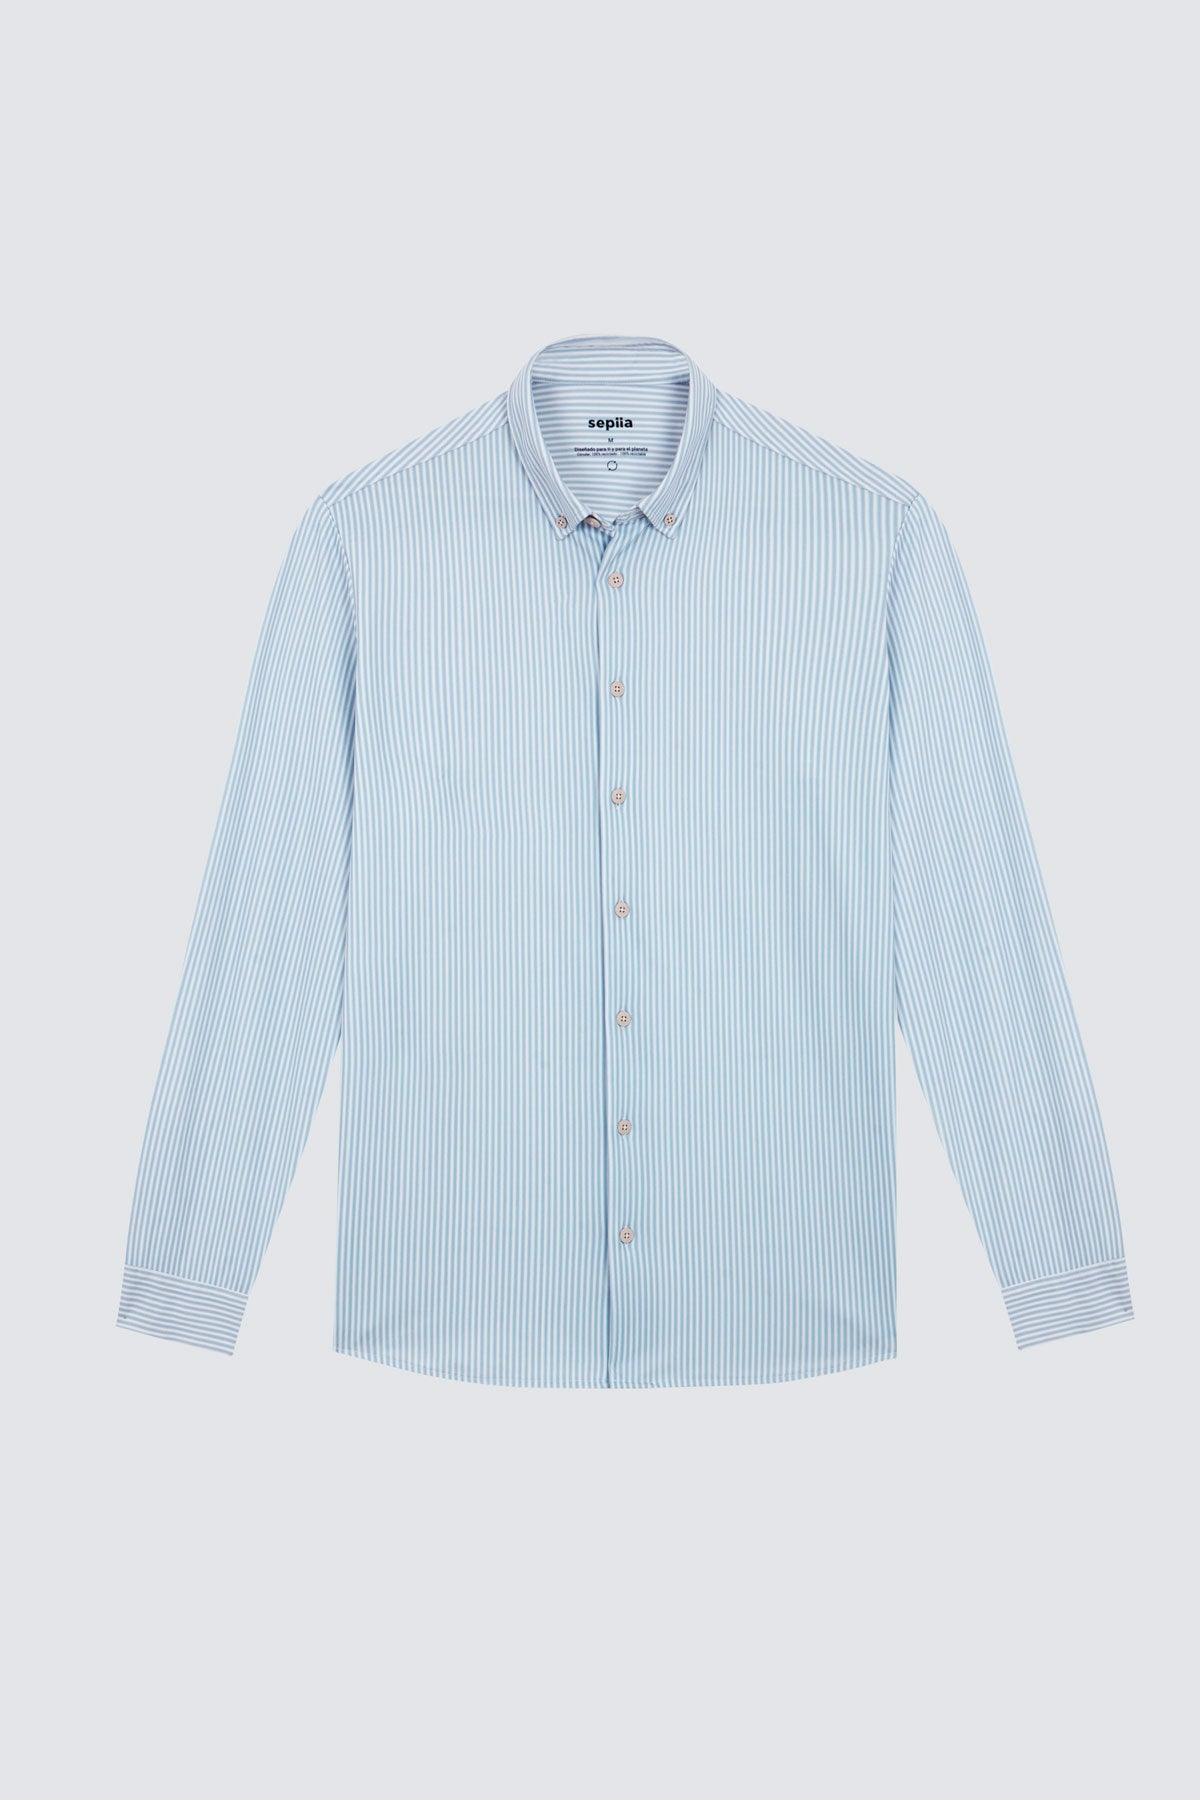 Camisa doble tono azul regular de Sepiia, estilo y comodidad en una prenda duradera. Foto prenda en plano